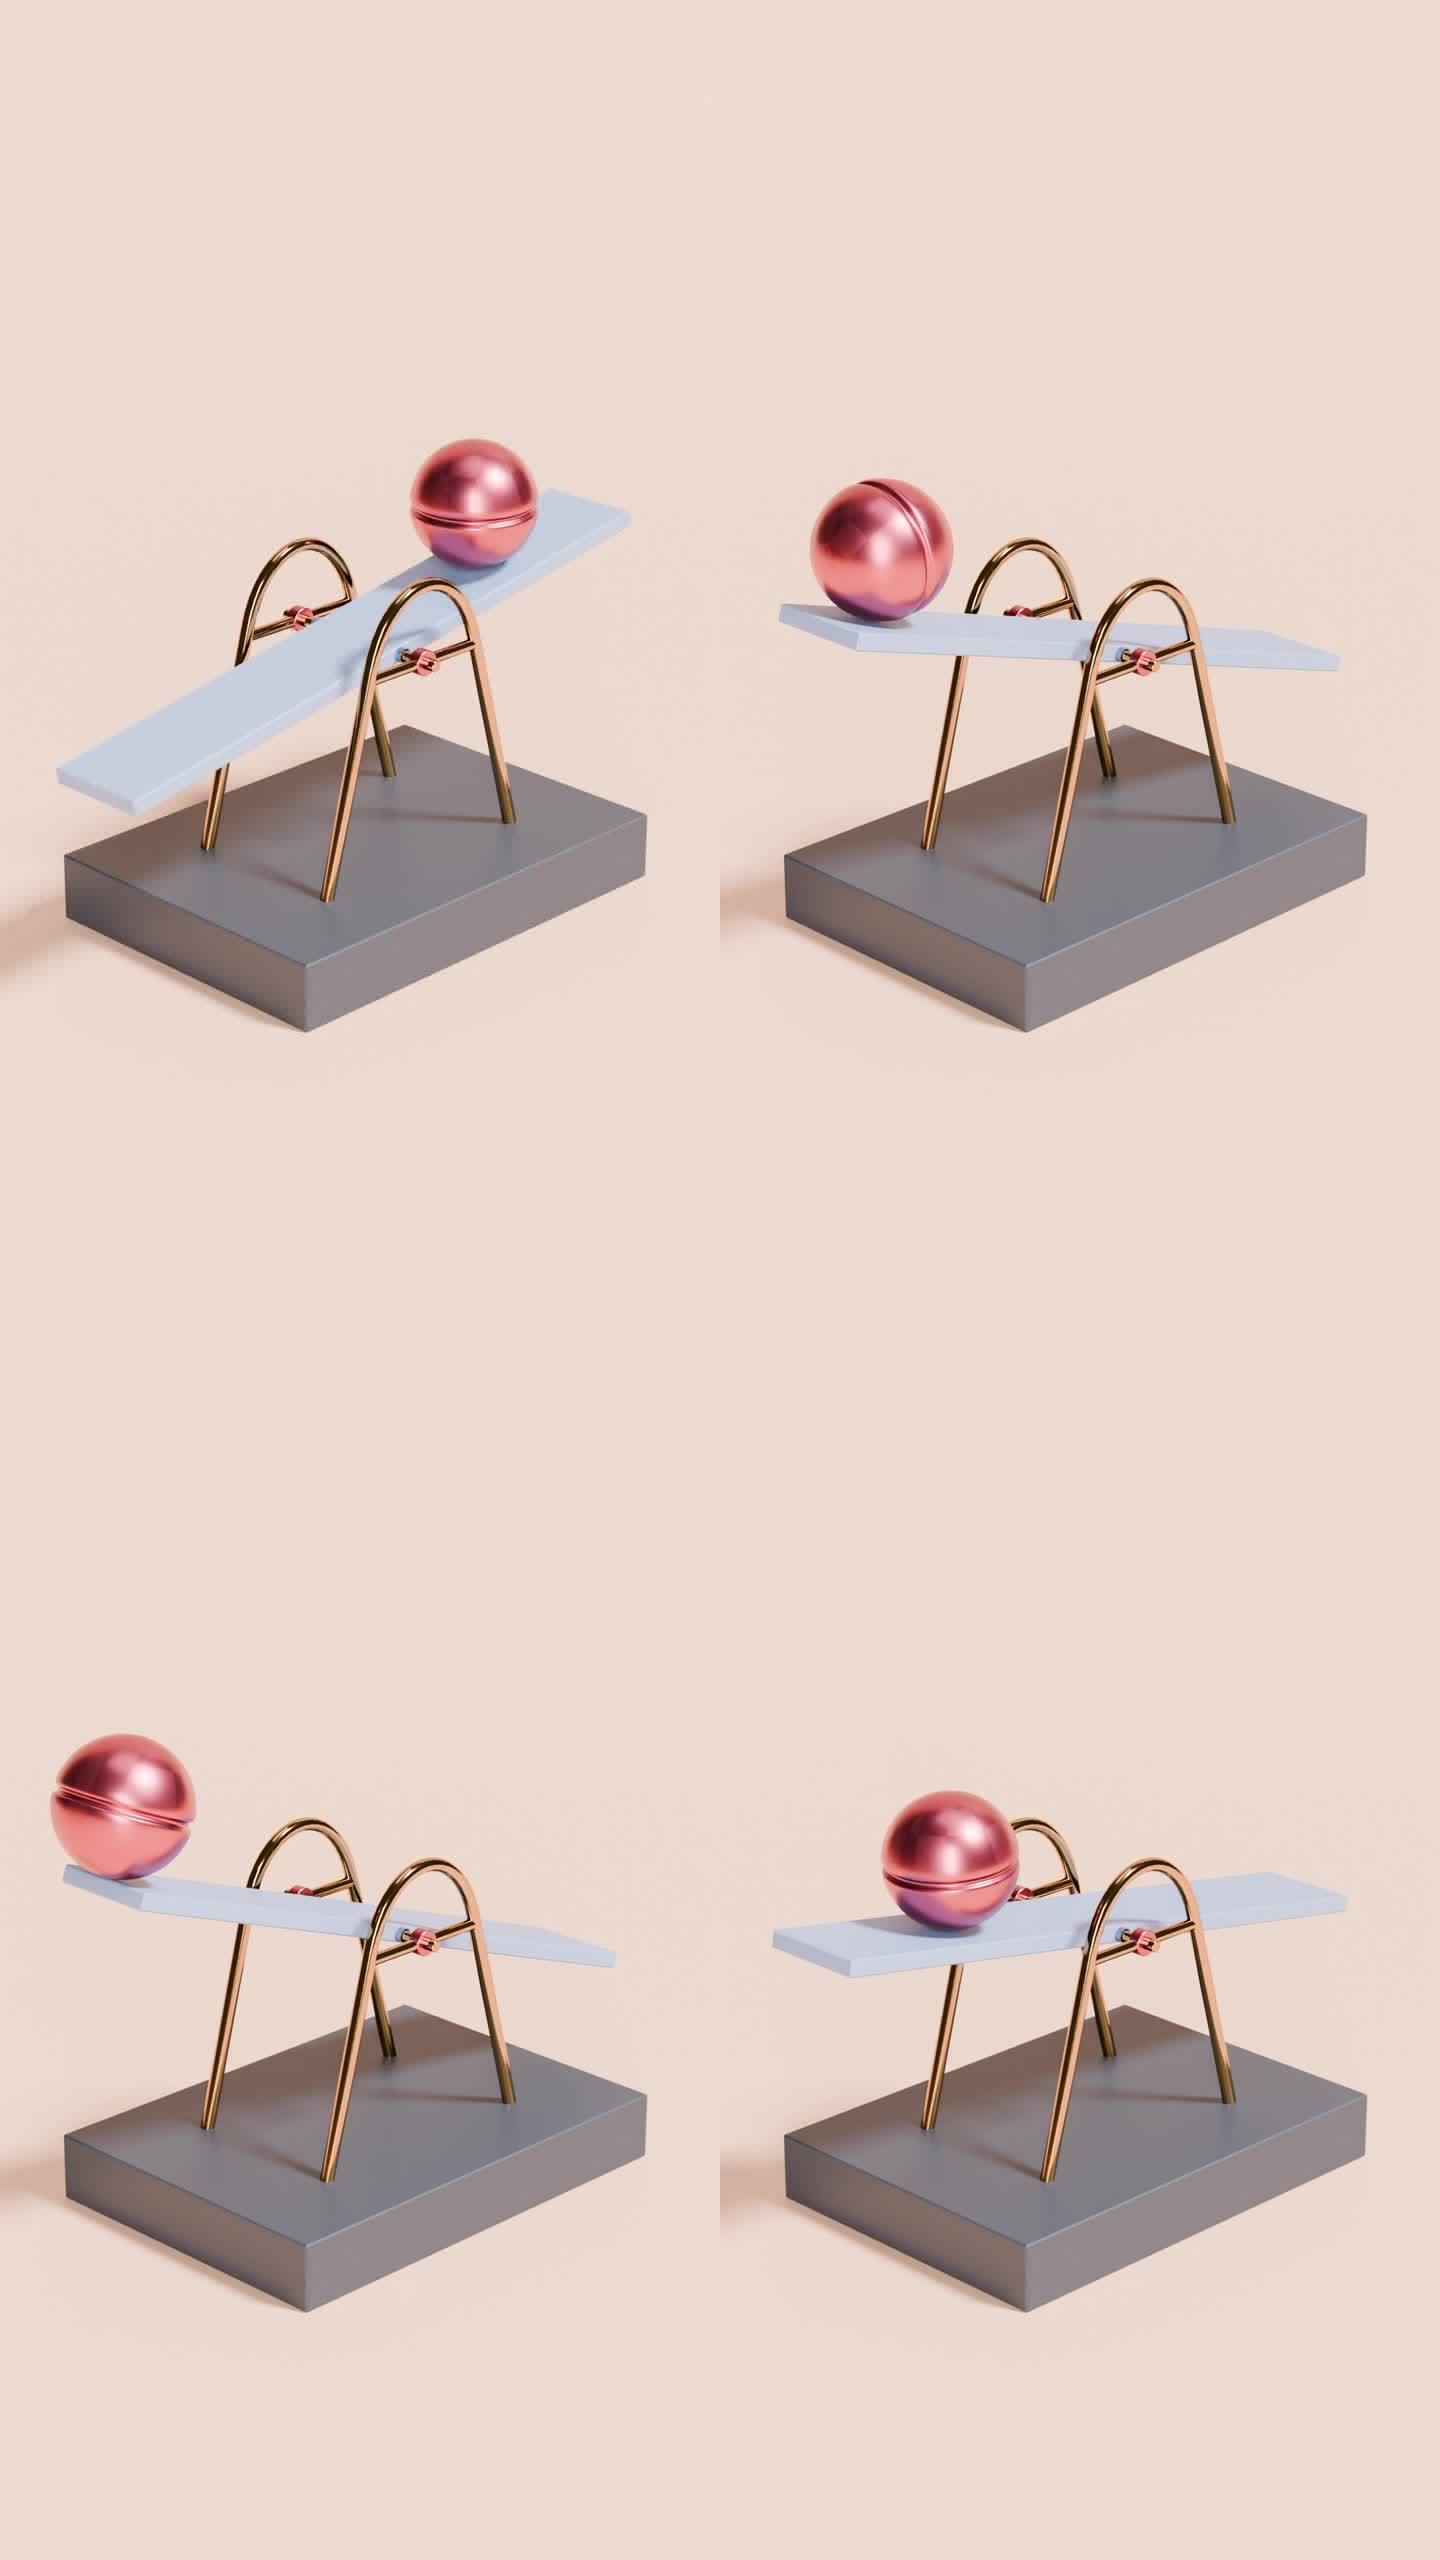 垂直运动动力学:现代抽象3D动画